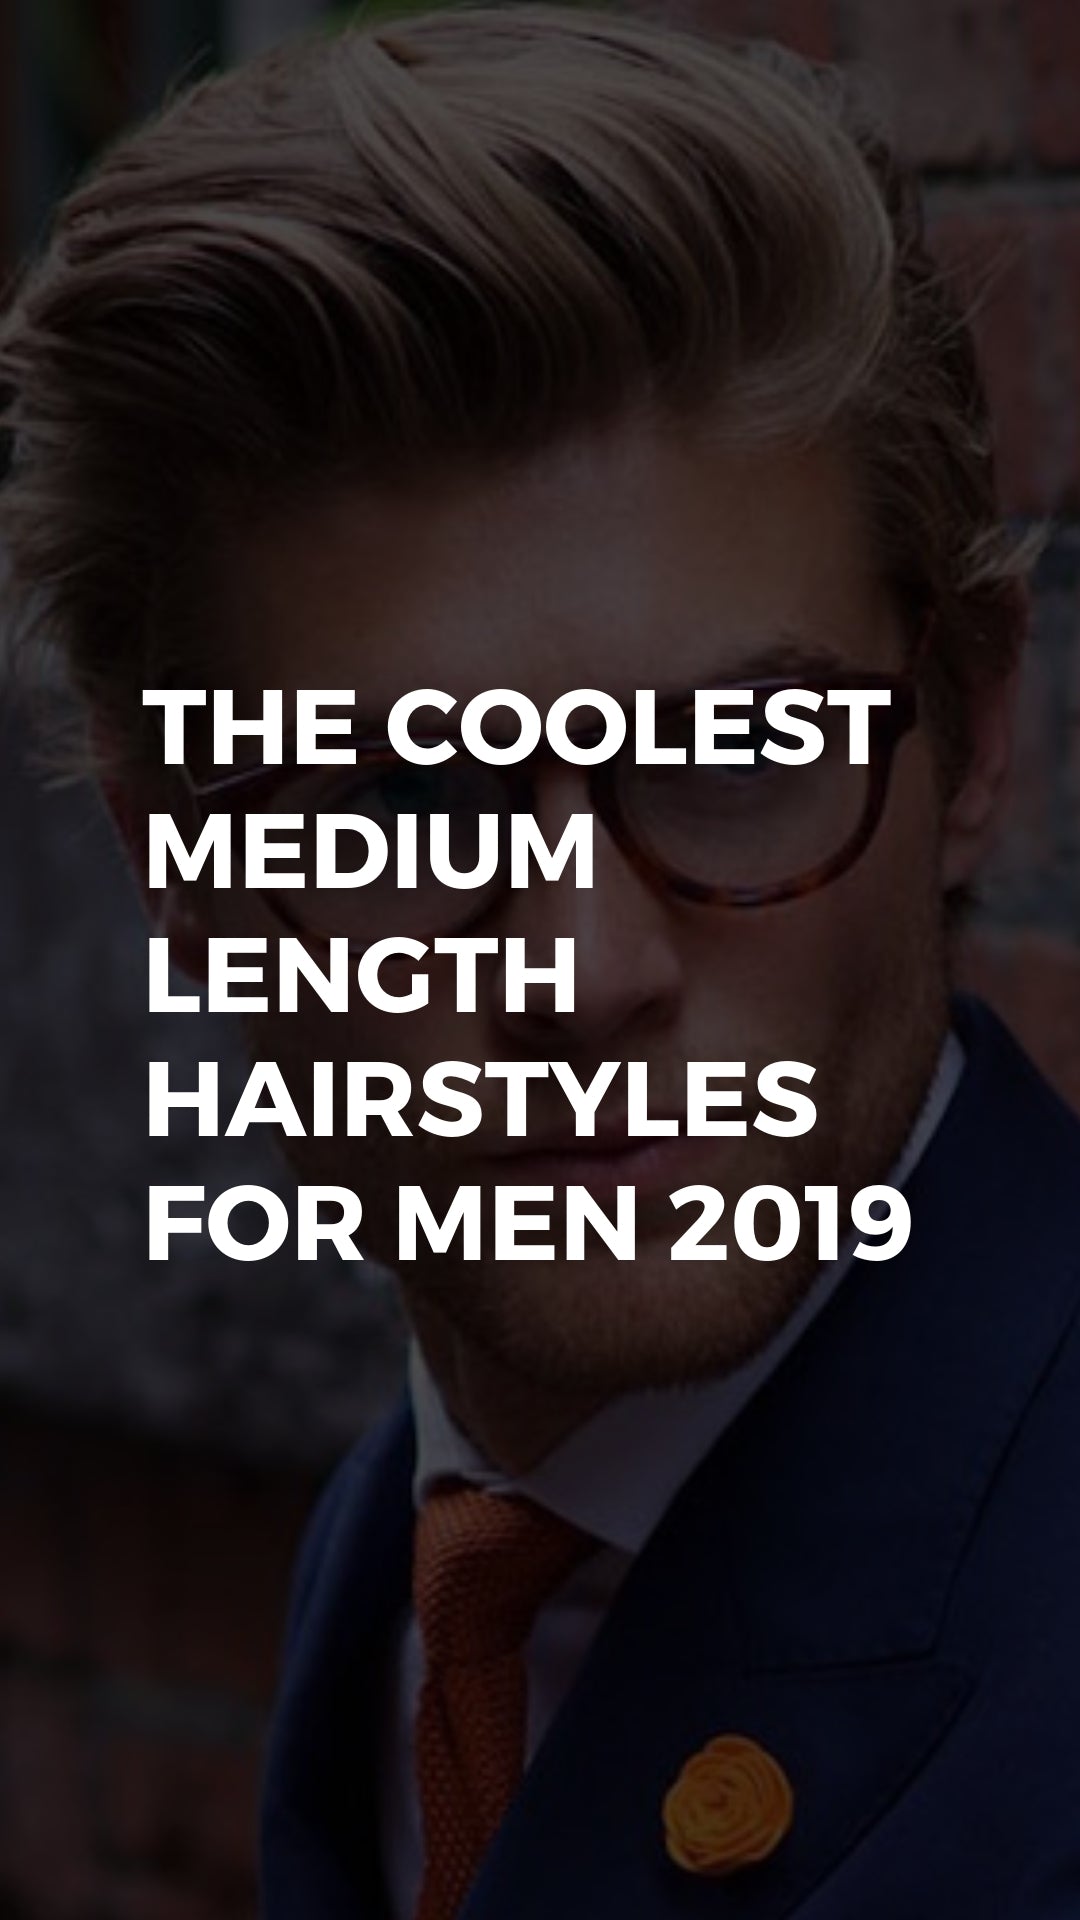 Trendiest Medium Length Hairstyles Men | The Emory Wheel